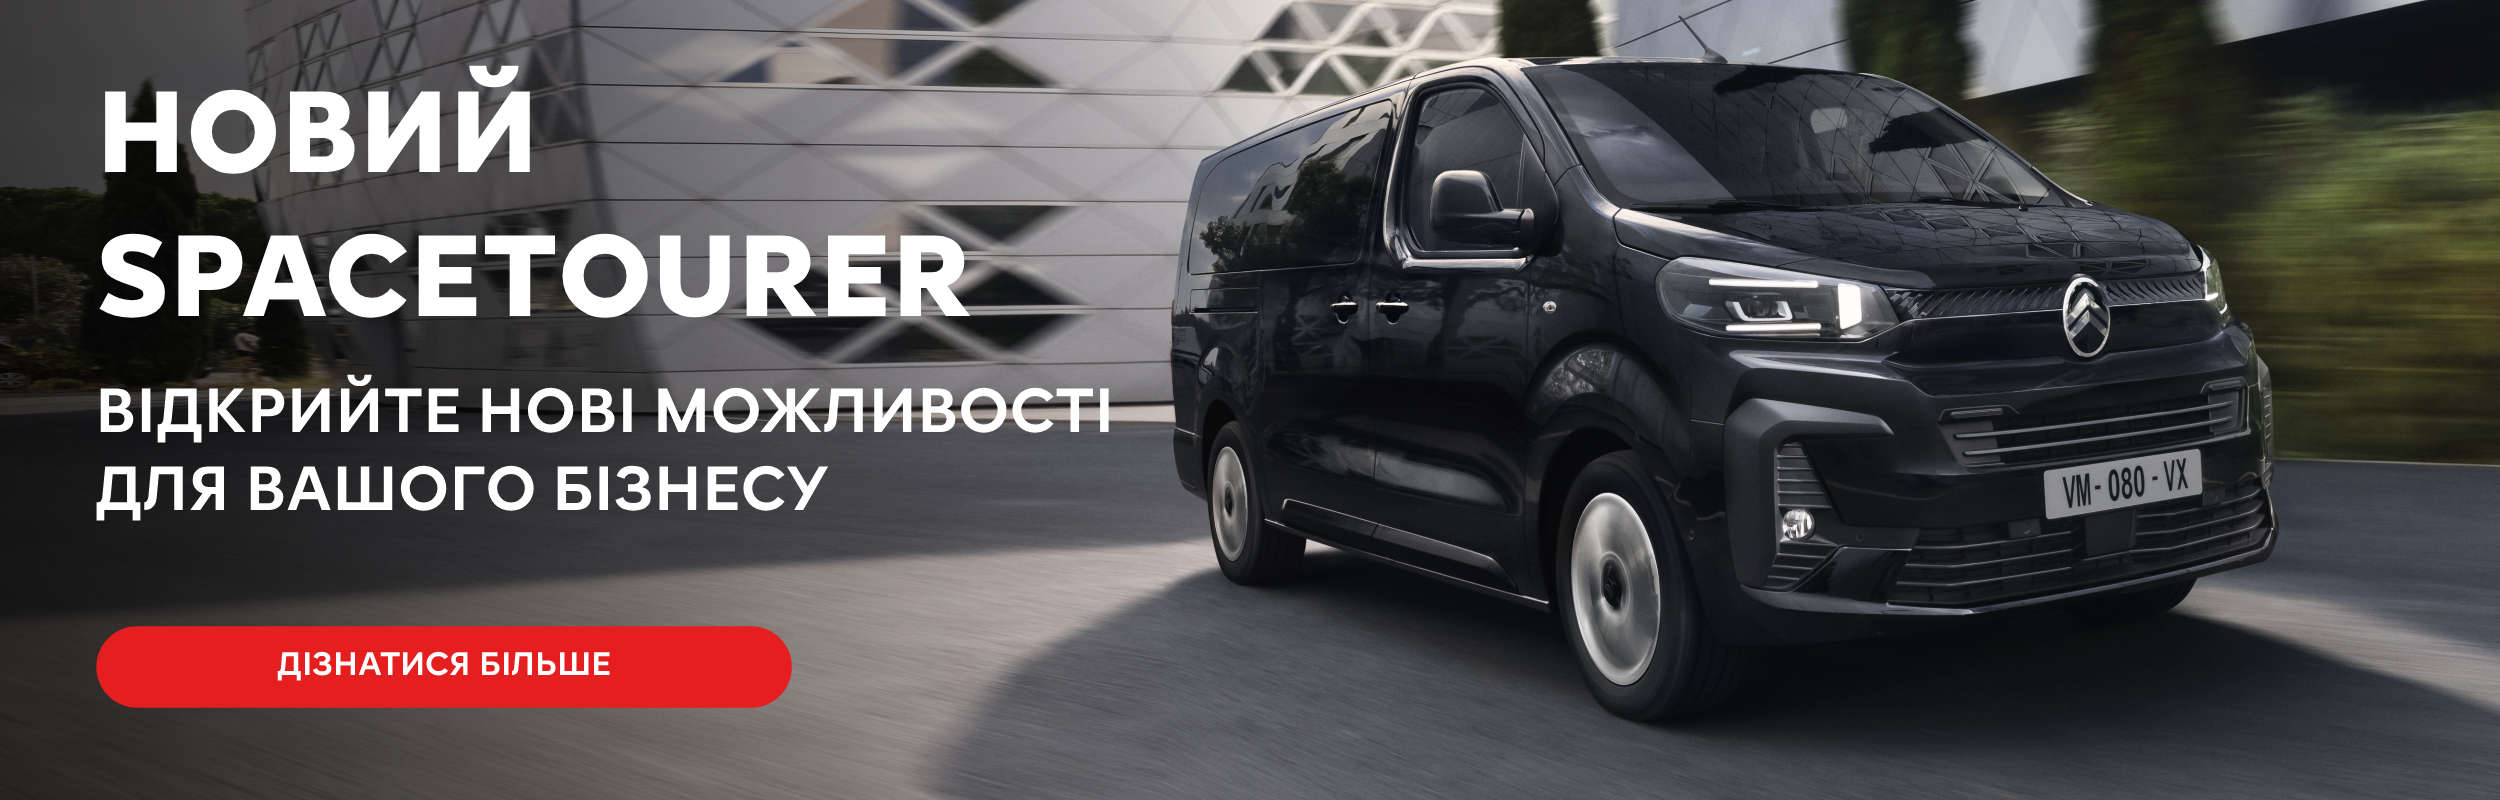 Купить Citroen в Одессе - Официальный дилер | Головна